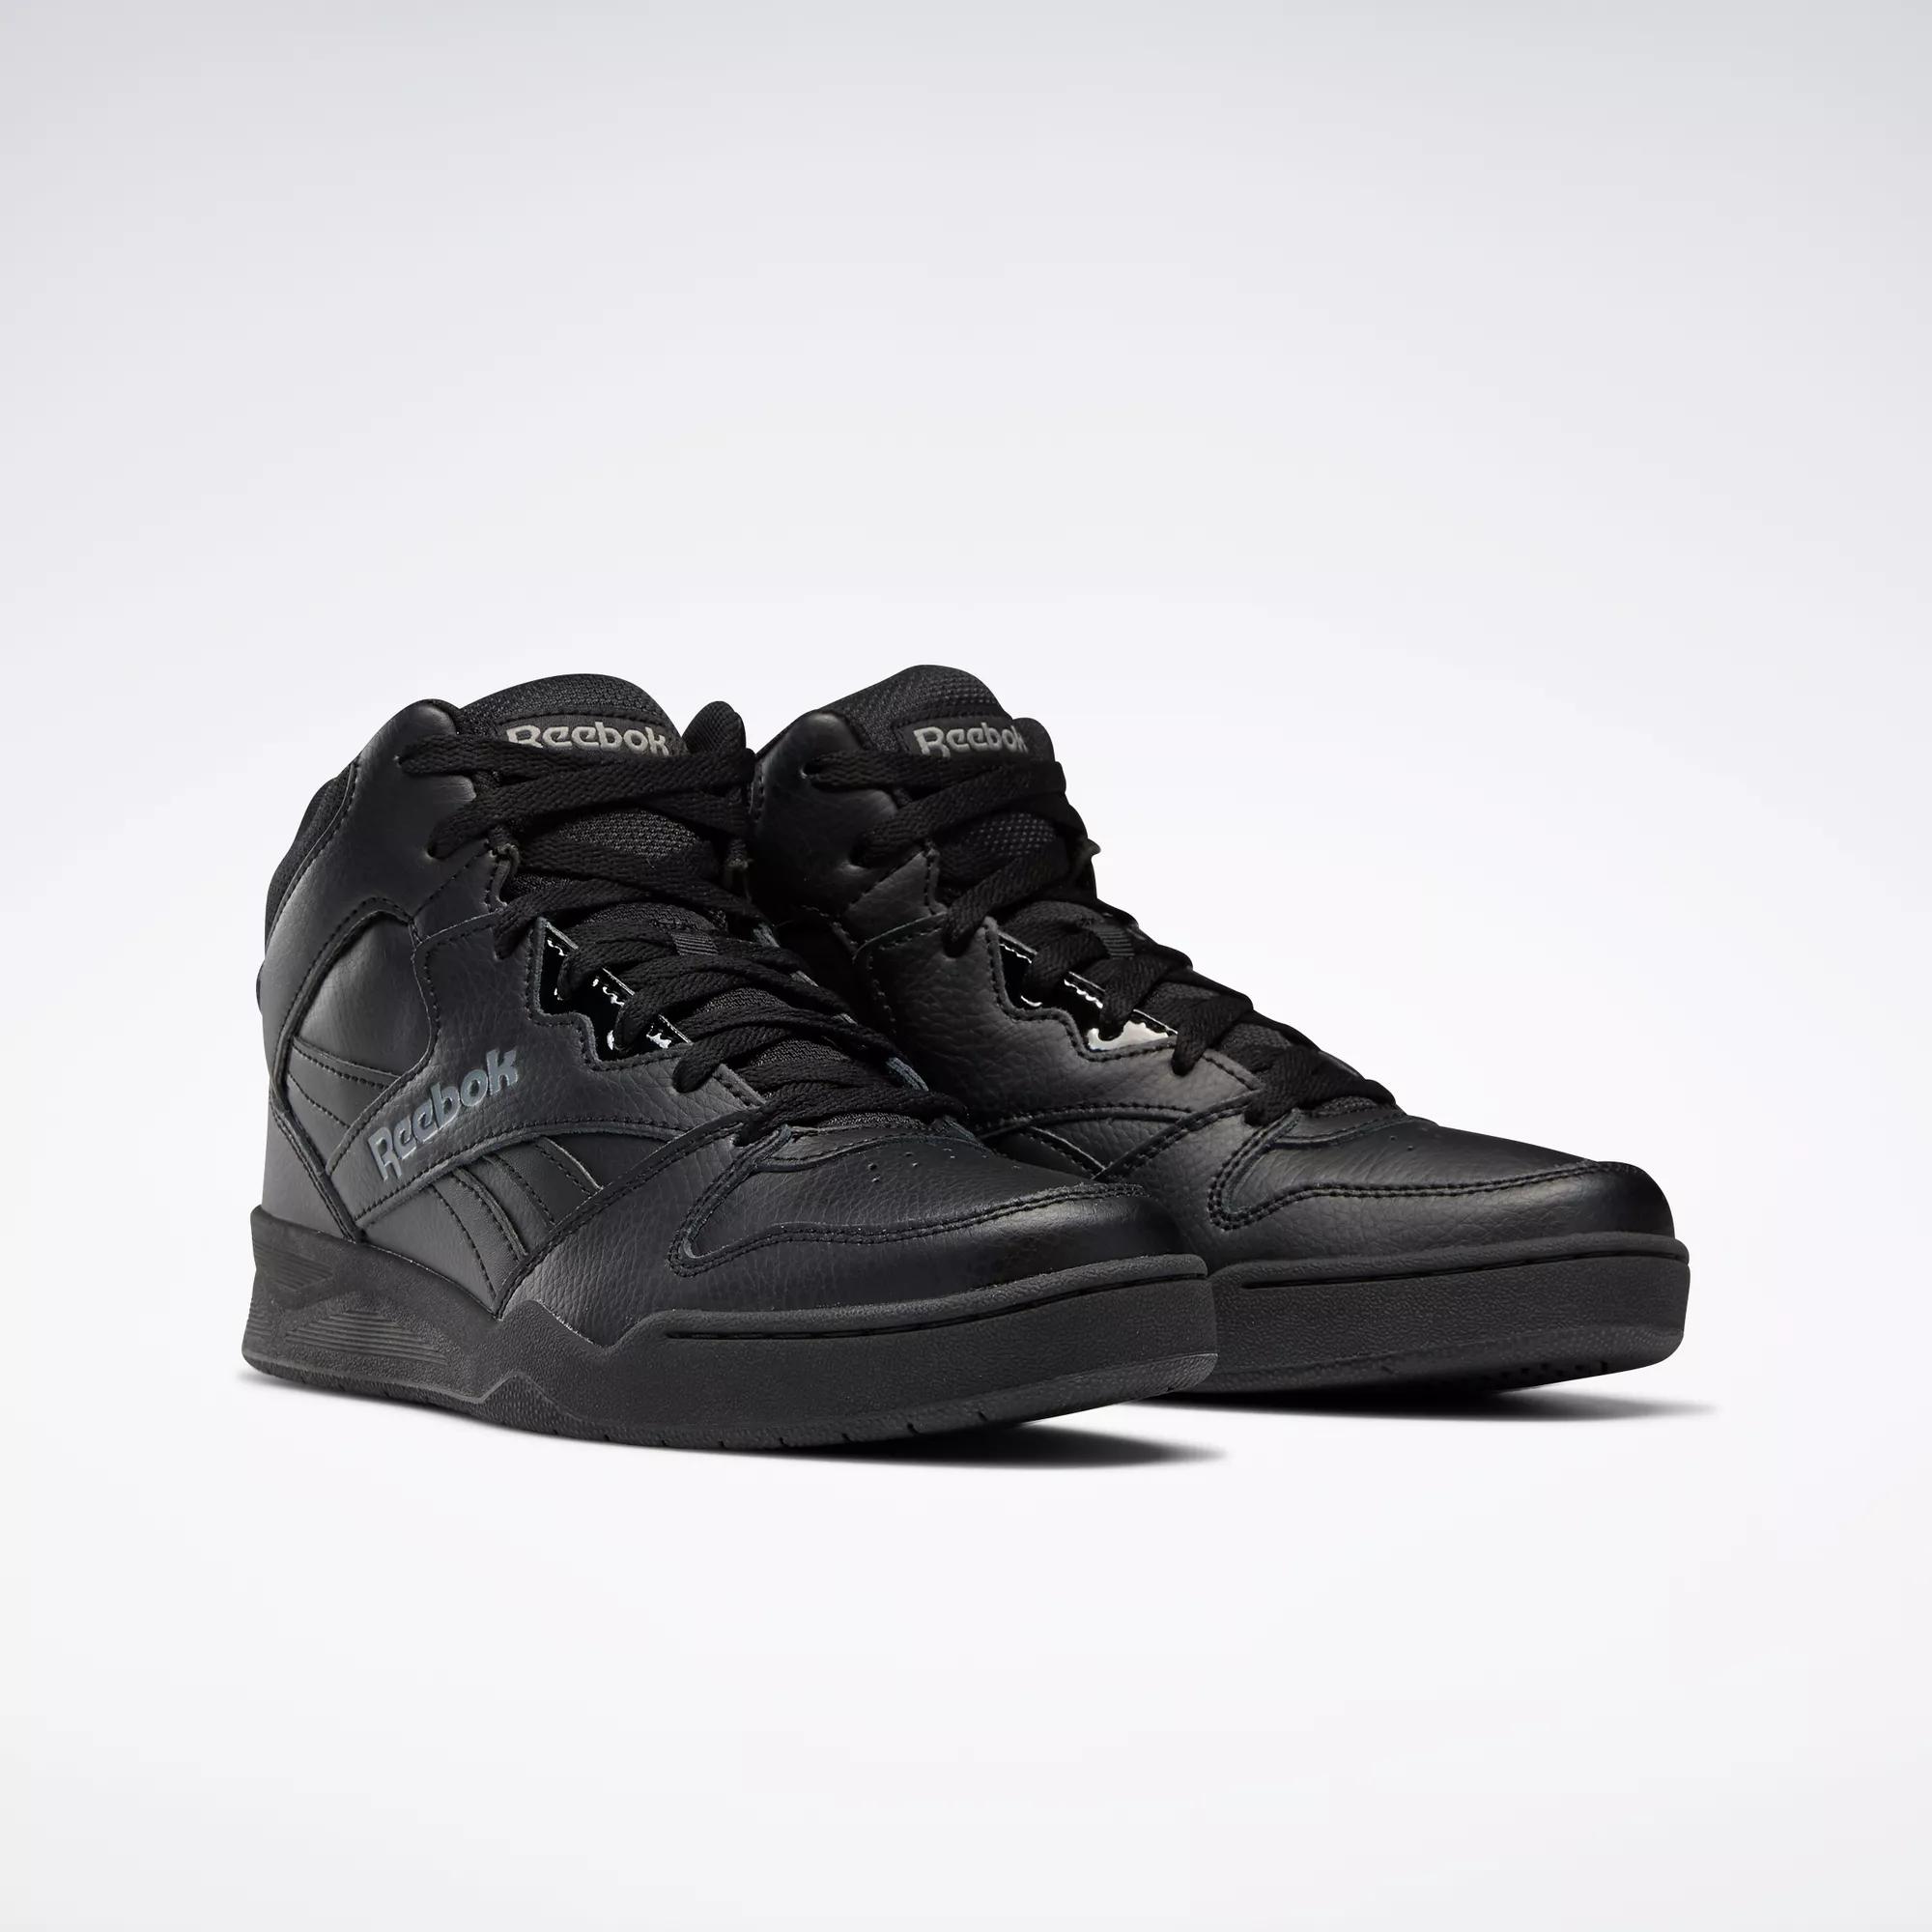 Royal BB4500 Shoes - Black | Reebok